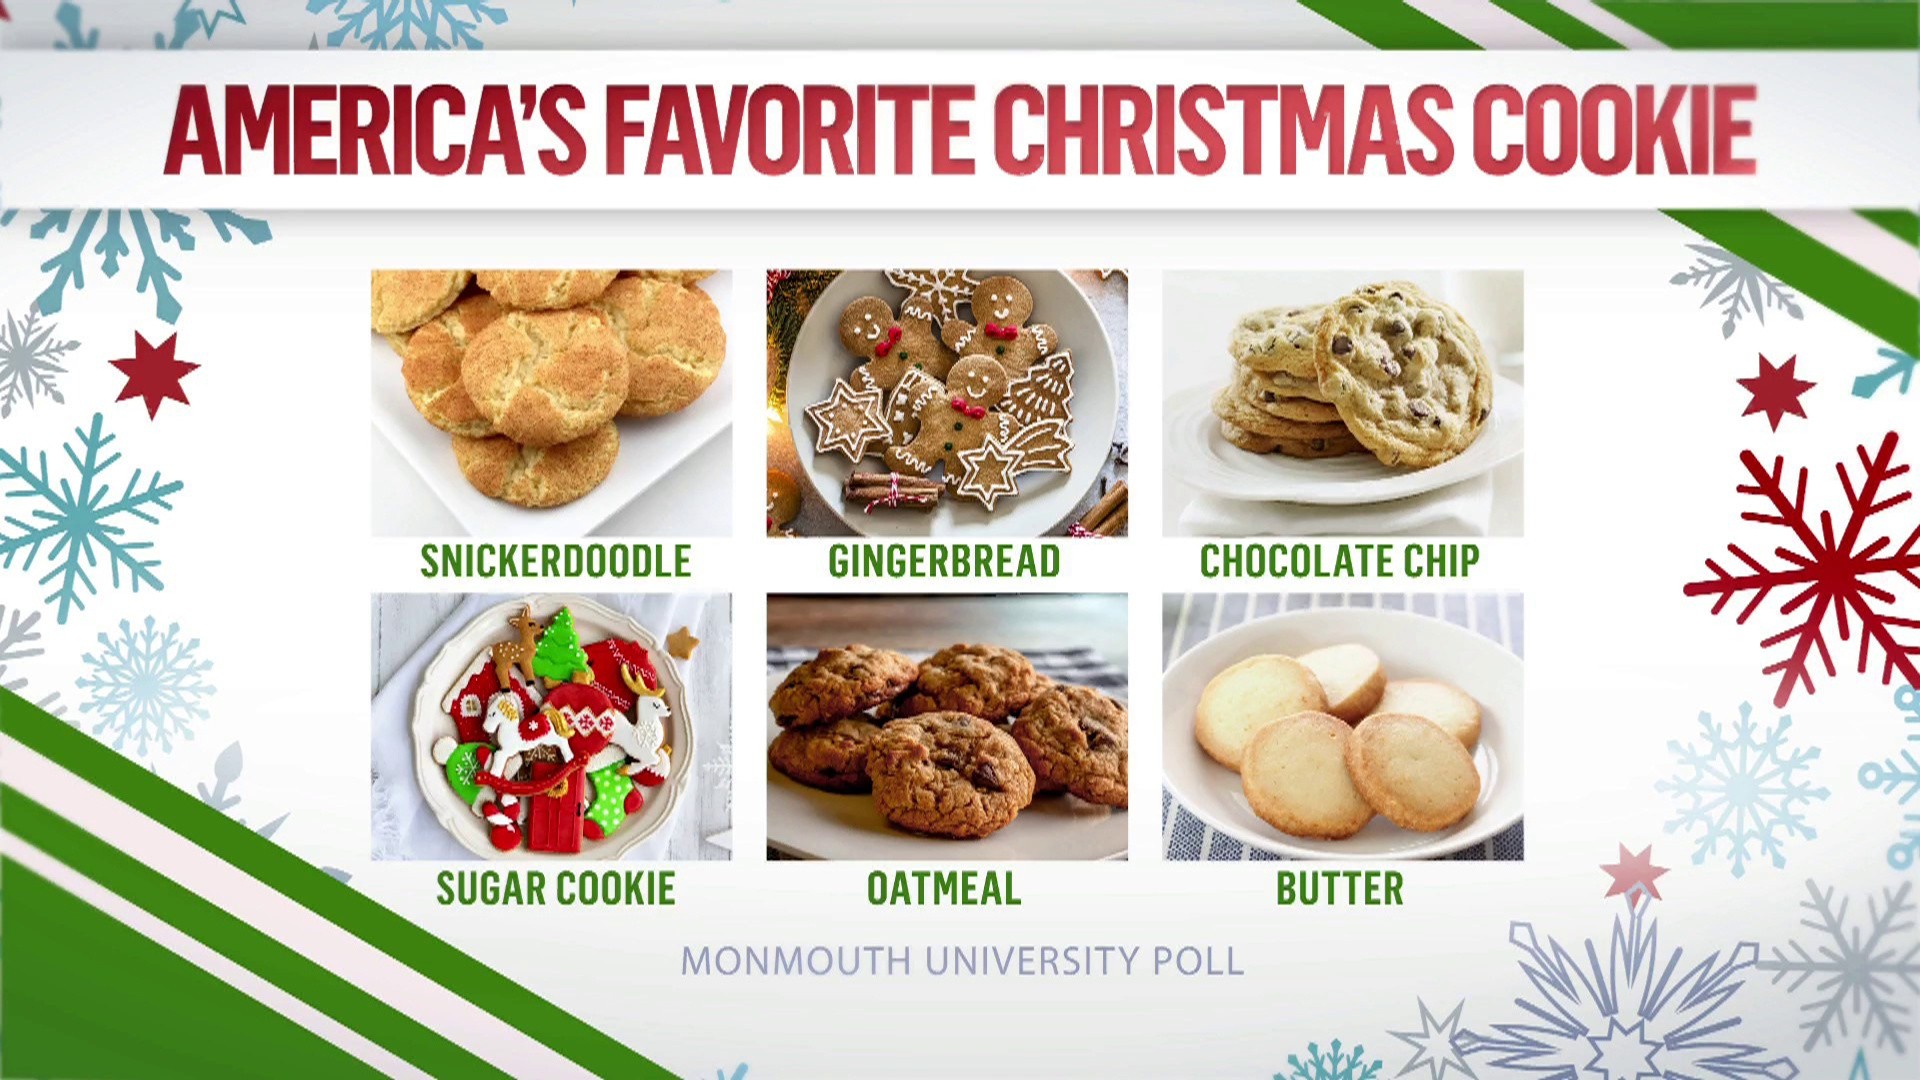 America's favorite Christmas cookie is…